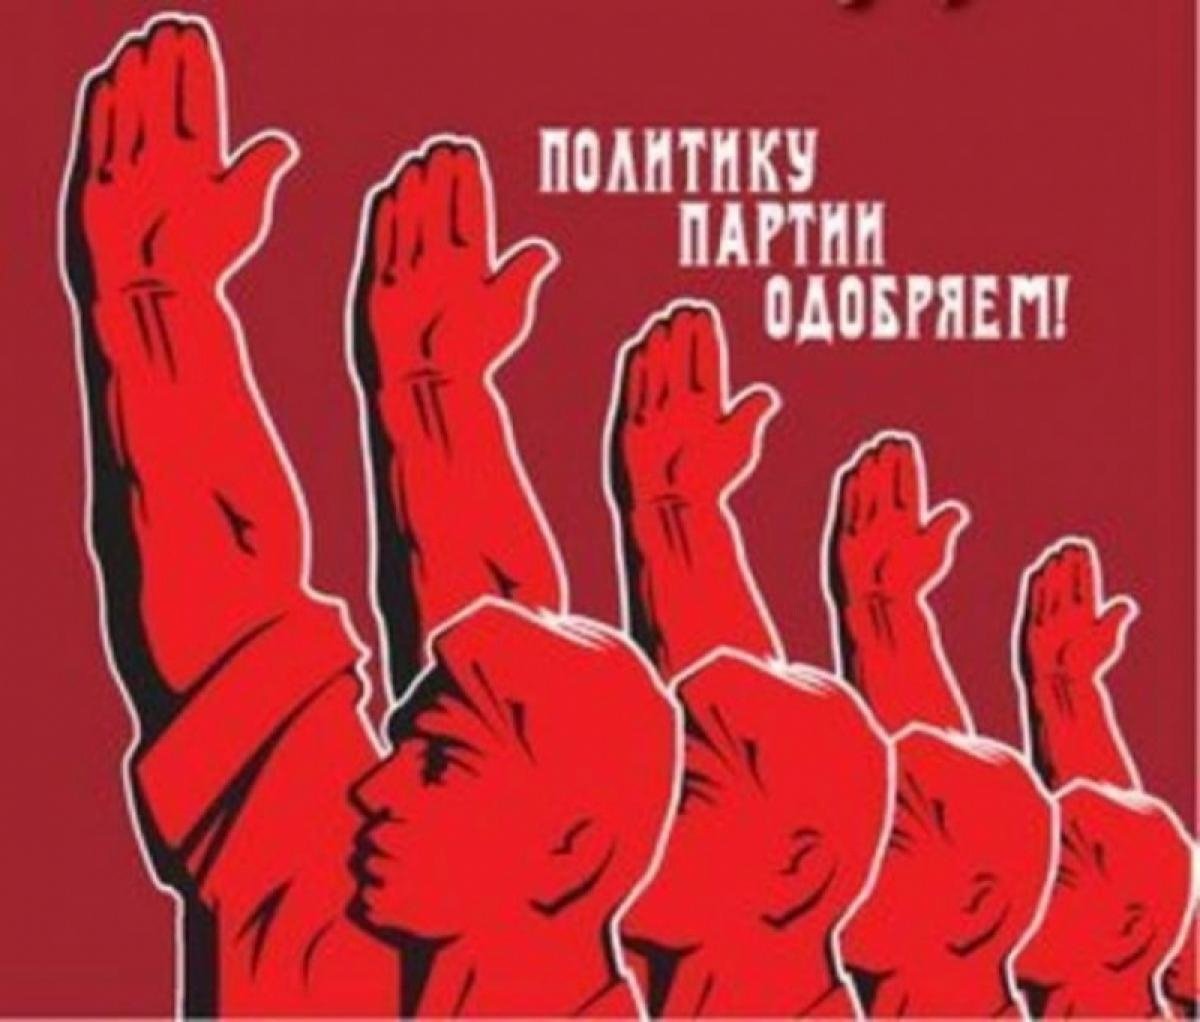 Поддерживающий лозунг. Советские политические плакаты. Партийные лозунги. Коммунистические плакаты. Советские лозунги и плакаты.